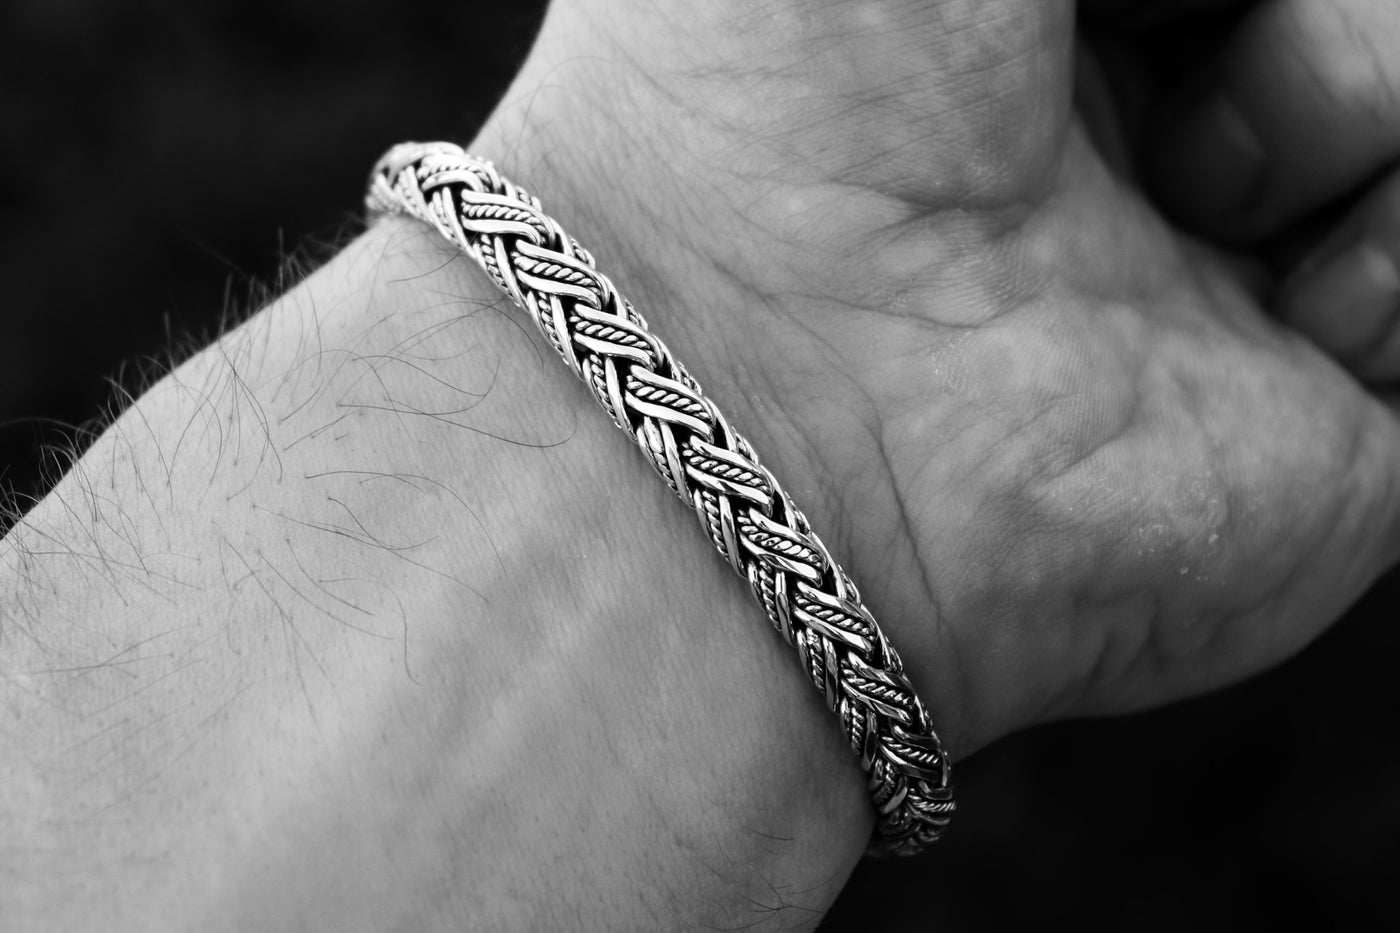 Bali silver bracelet (7 mm)